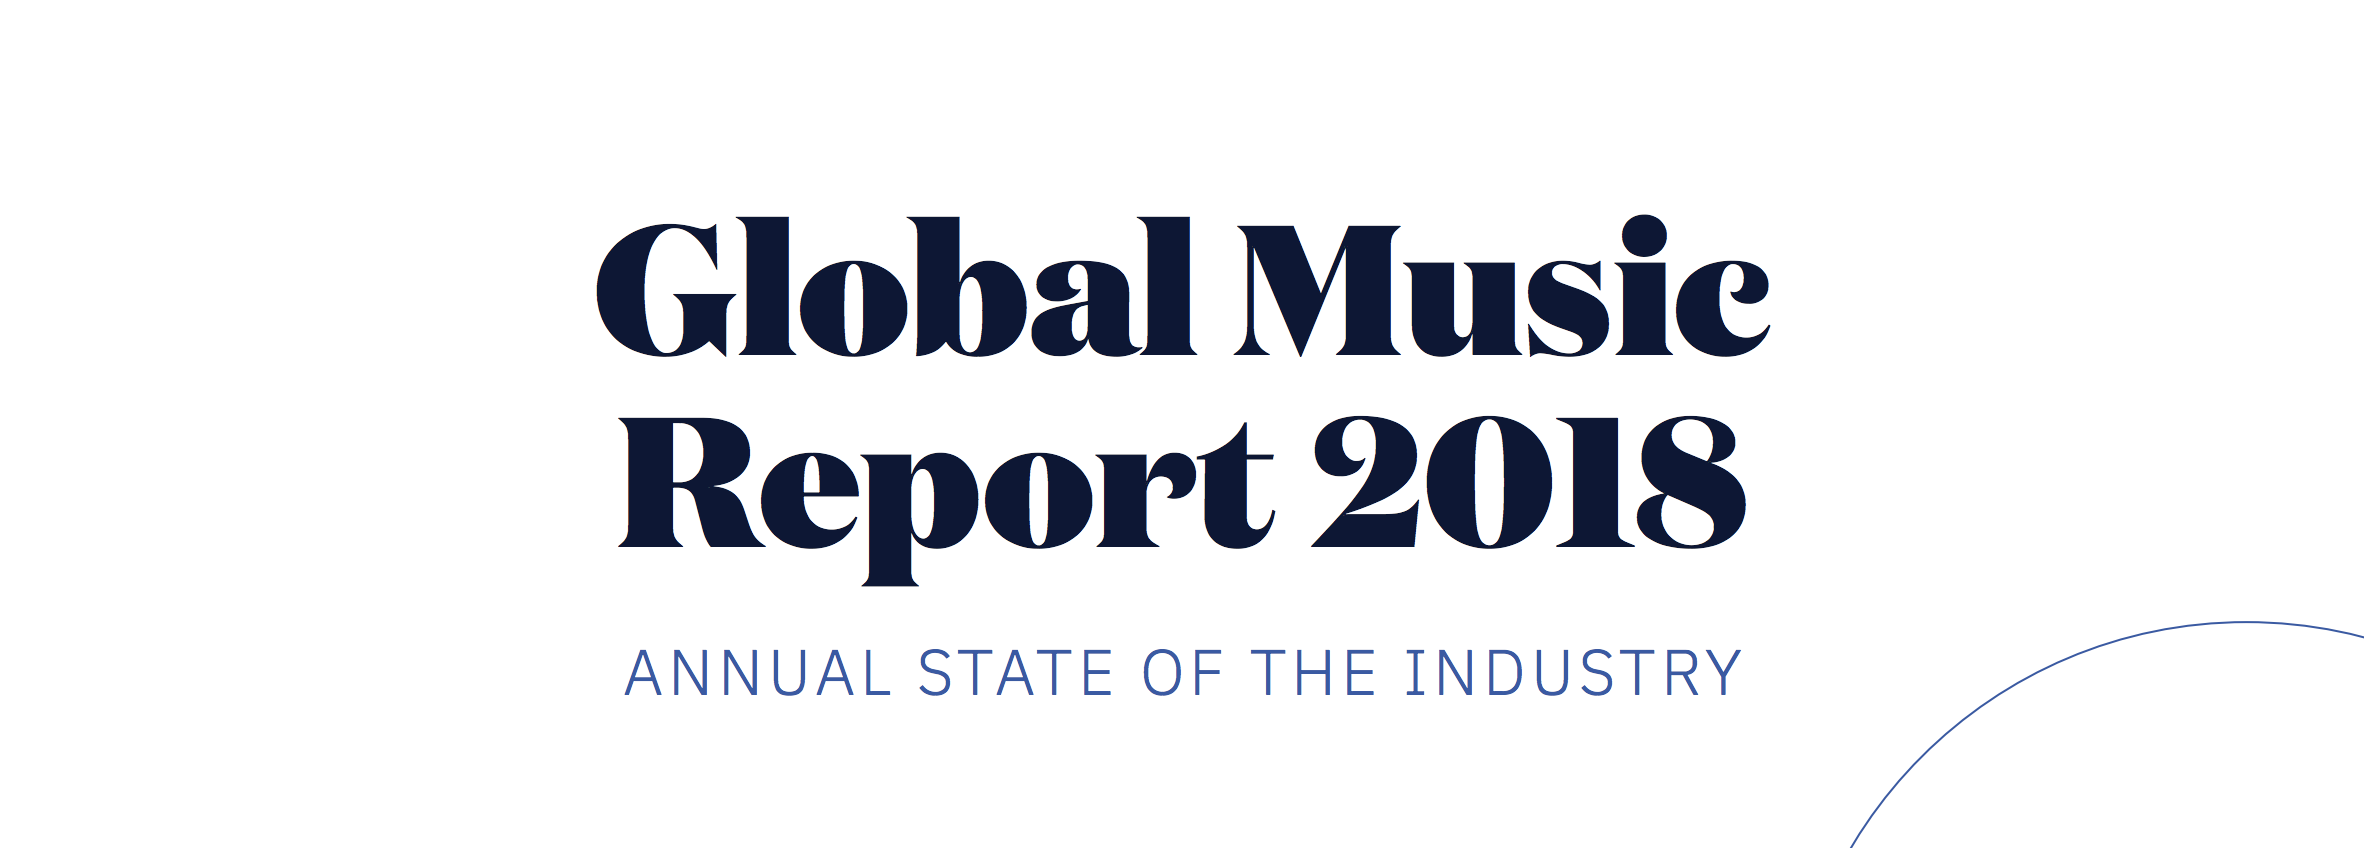 El consumo de música grabada en 2018 logró recaudar más de 19,1 mil millones de dólares en 2018. Cusica Plus.